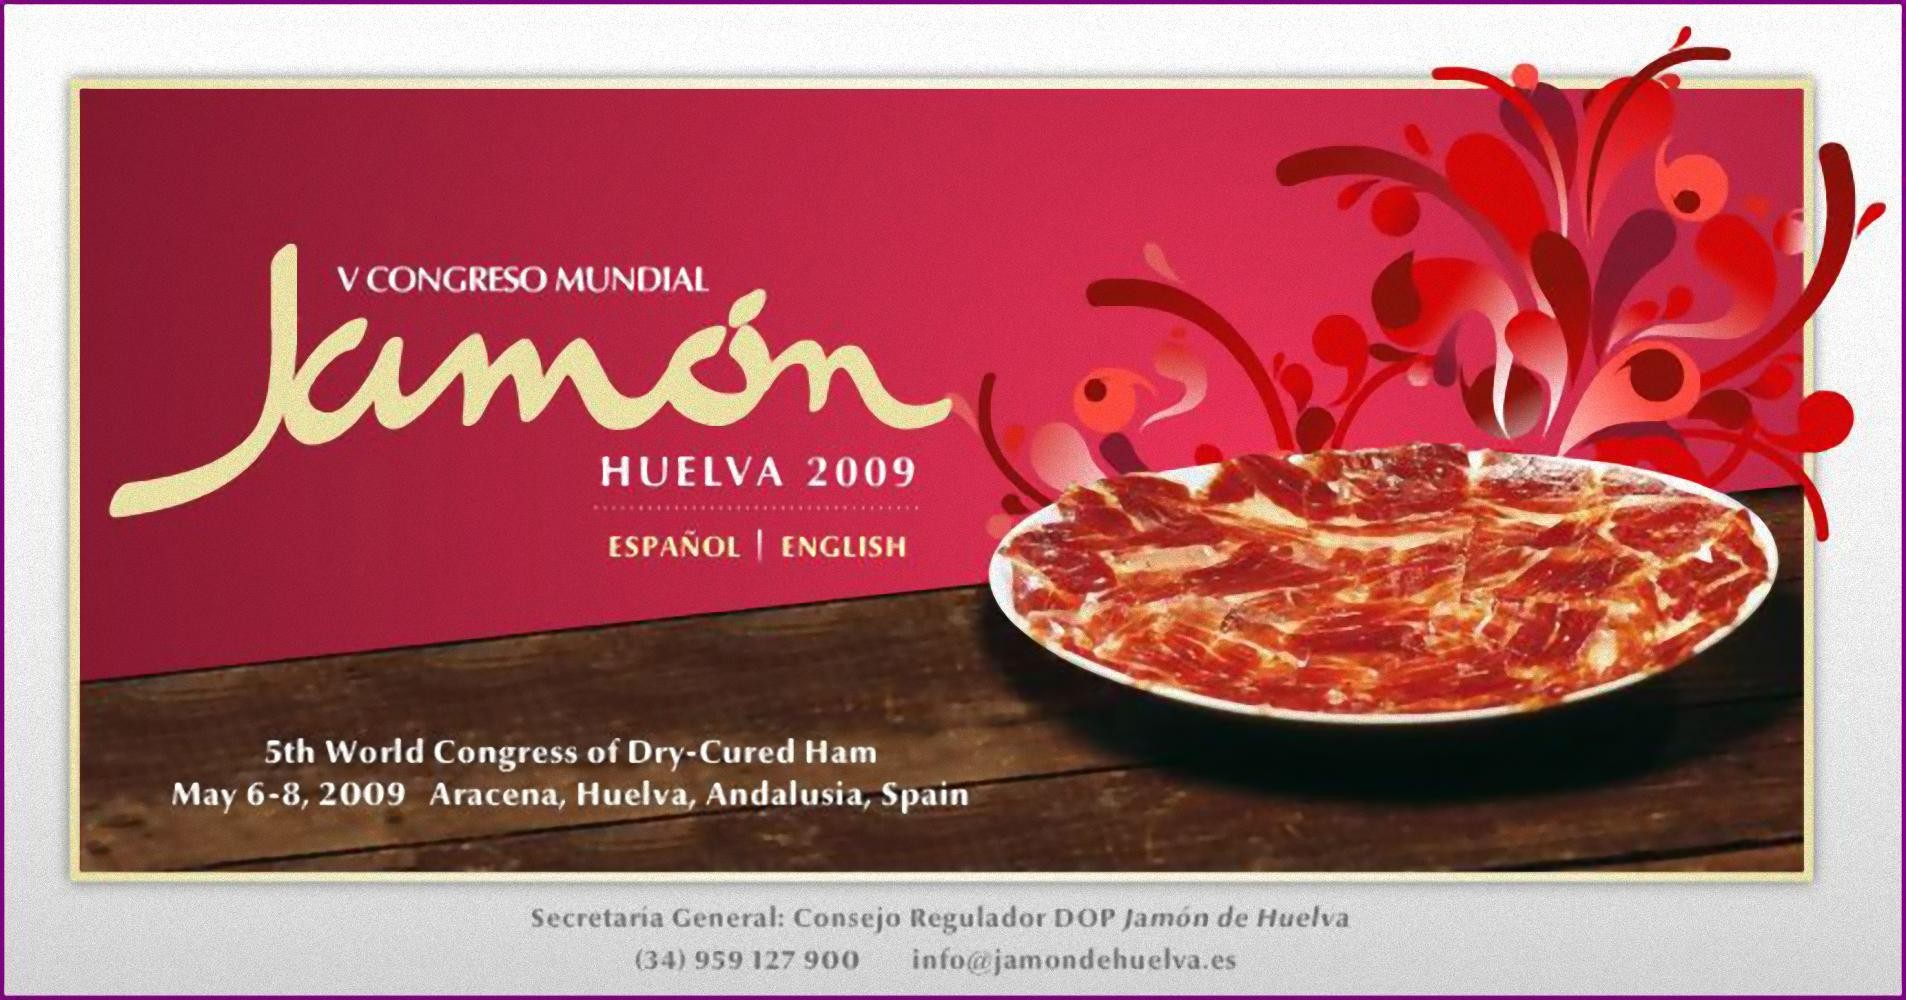 V Congreso Mundial Jamón Huelva 2009